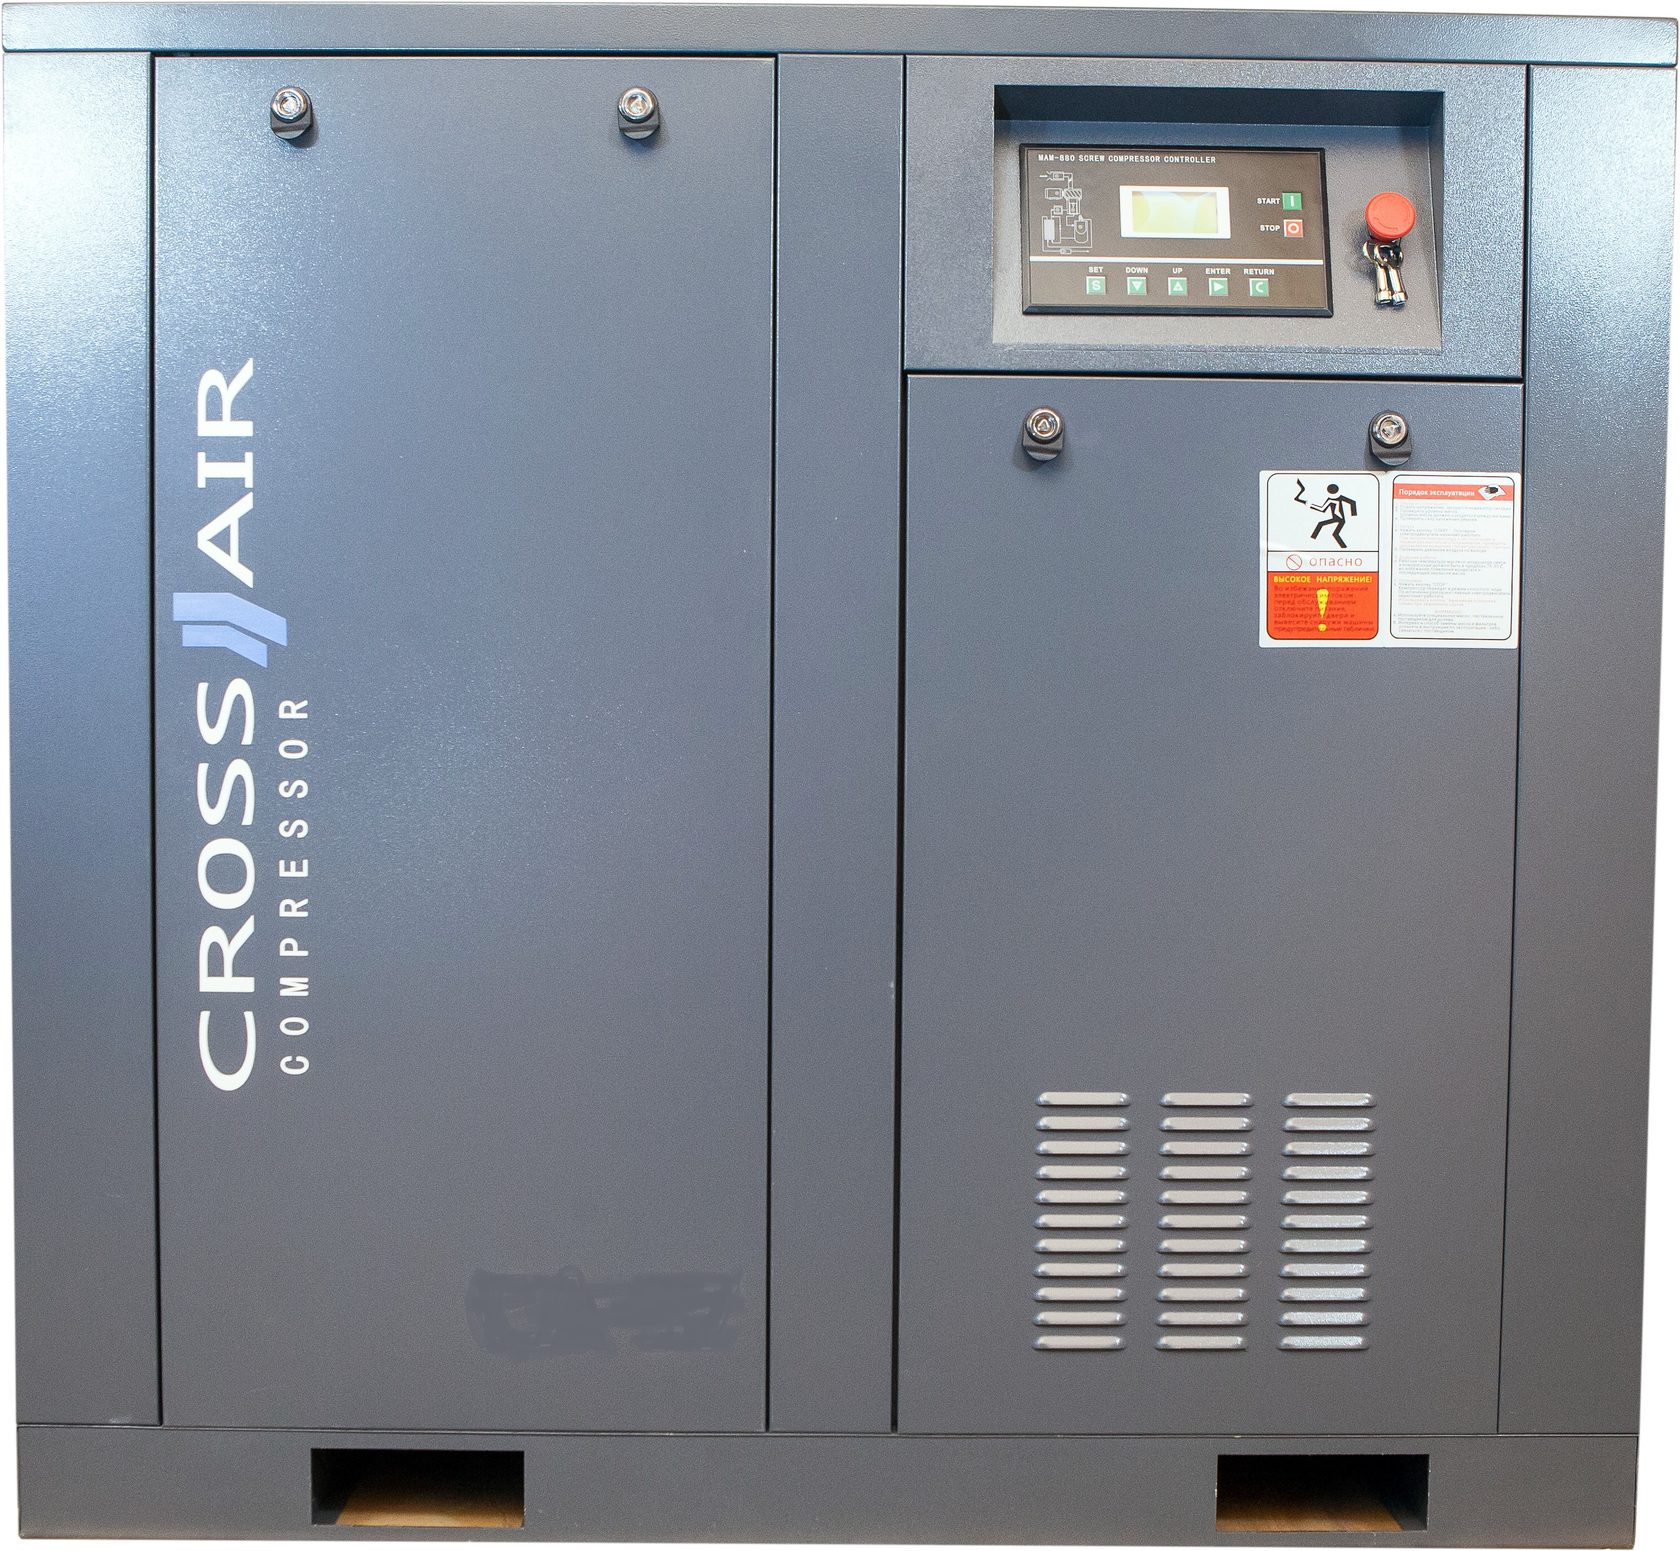 Винтовой компрессор CrossAir CA45-10GA